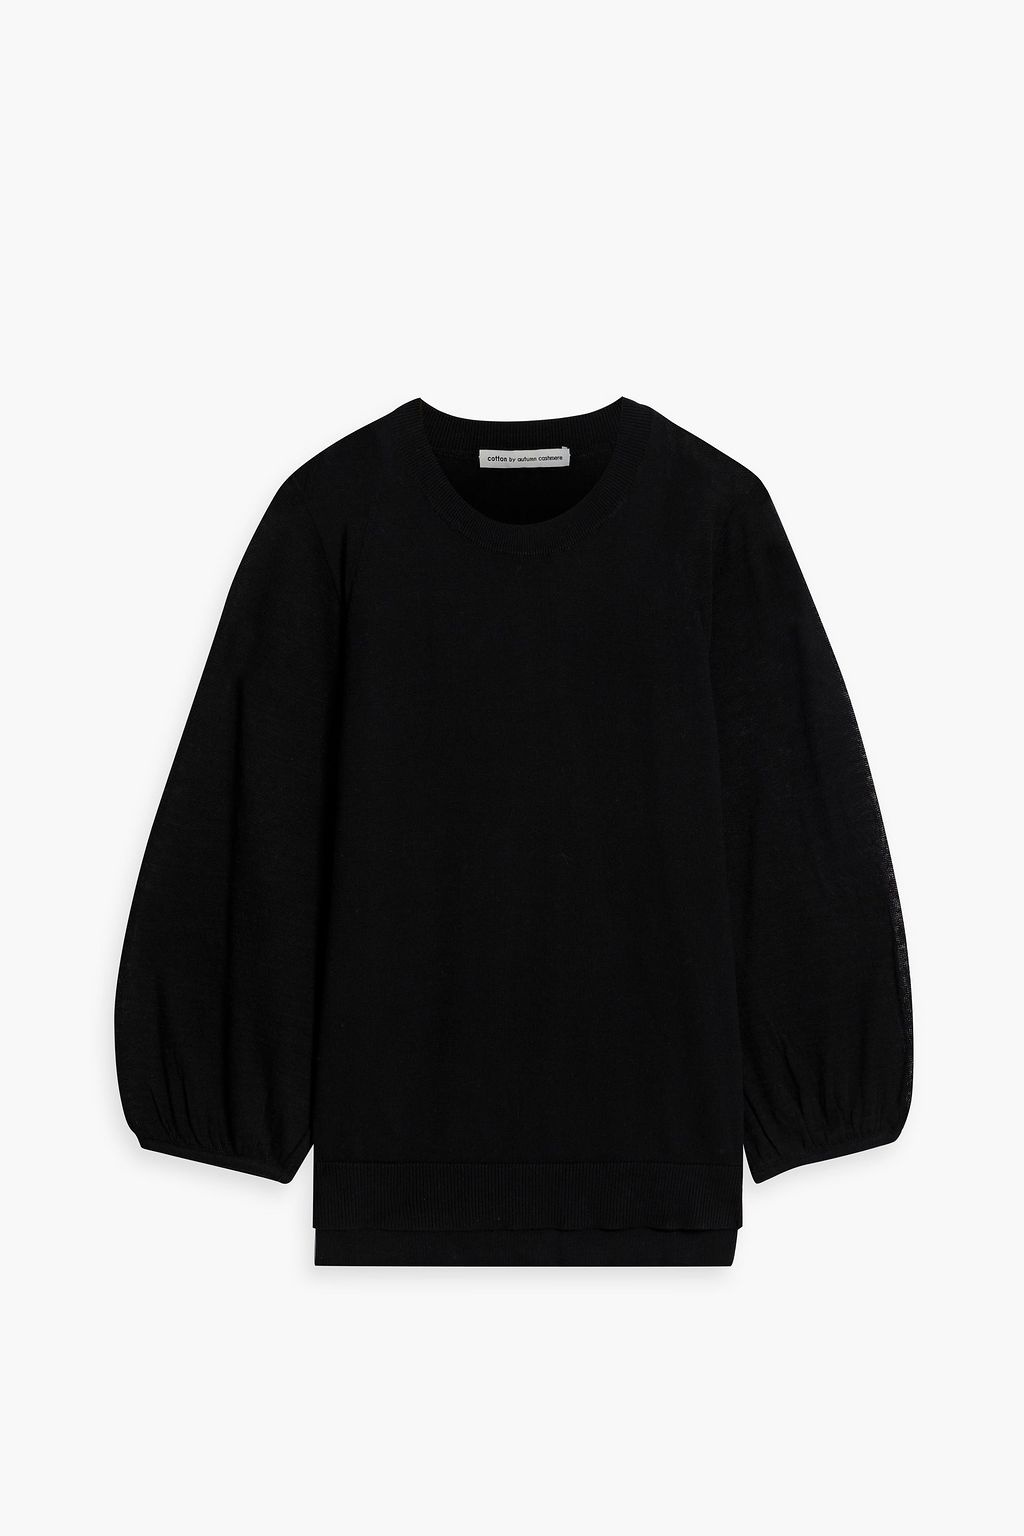 Хлопковый свитер Cotton By Autumn Cashmere, черный